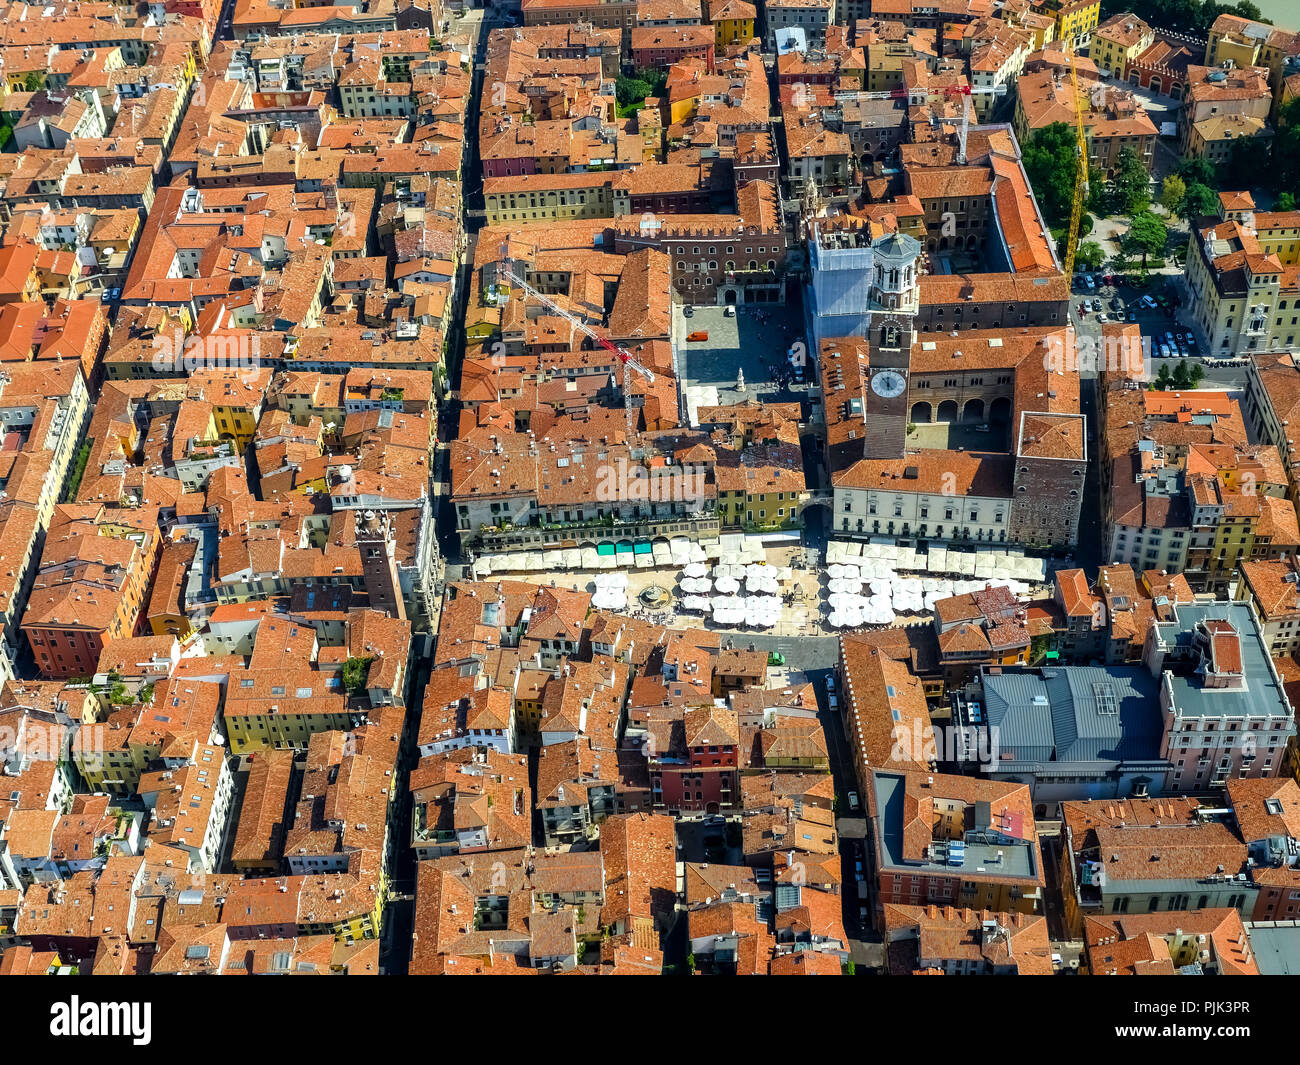 Vue aérienne, la Piazza delle Erbe, Piazza, Domus mercatorum, Torre dei Lamberti, du centre-ville de Vérone, Verona, au nord de l'Italie, Vénétie, Italie Banque D'Images